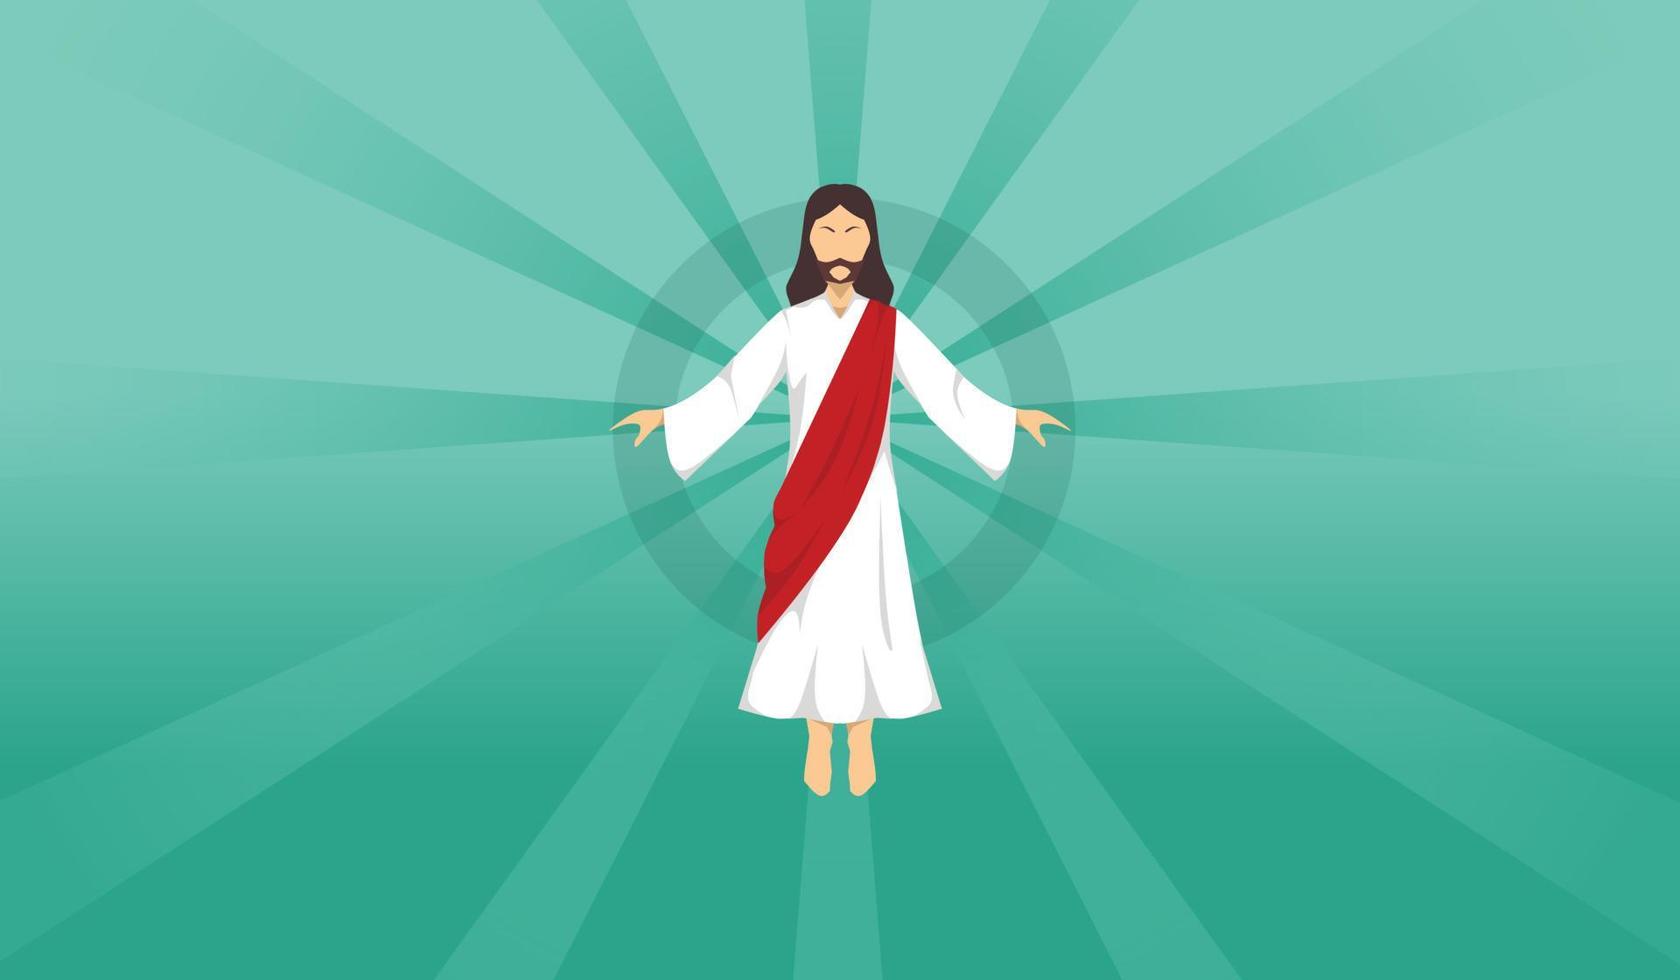 Kristi himmelsfärdsdag illustration av jesus crist platt design vektor